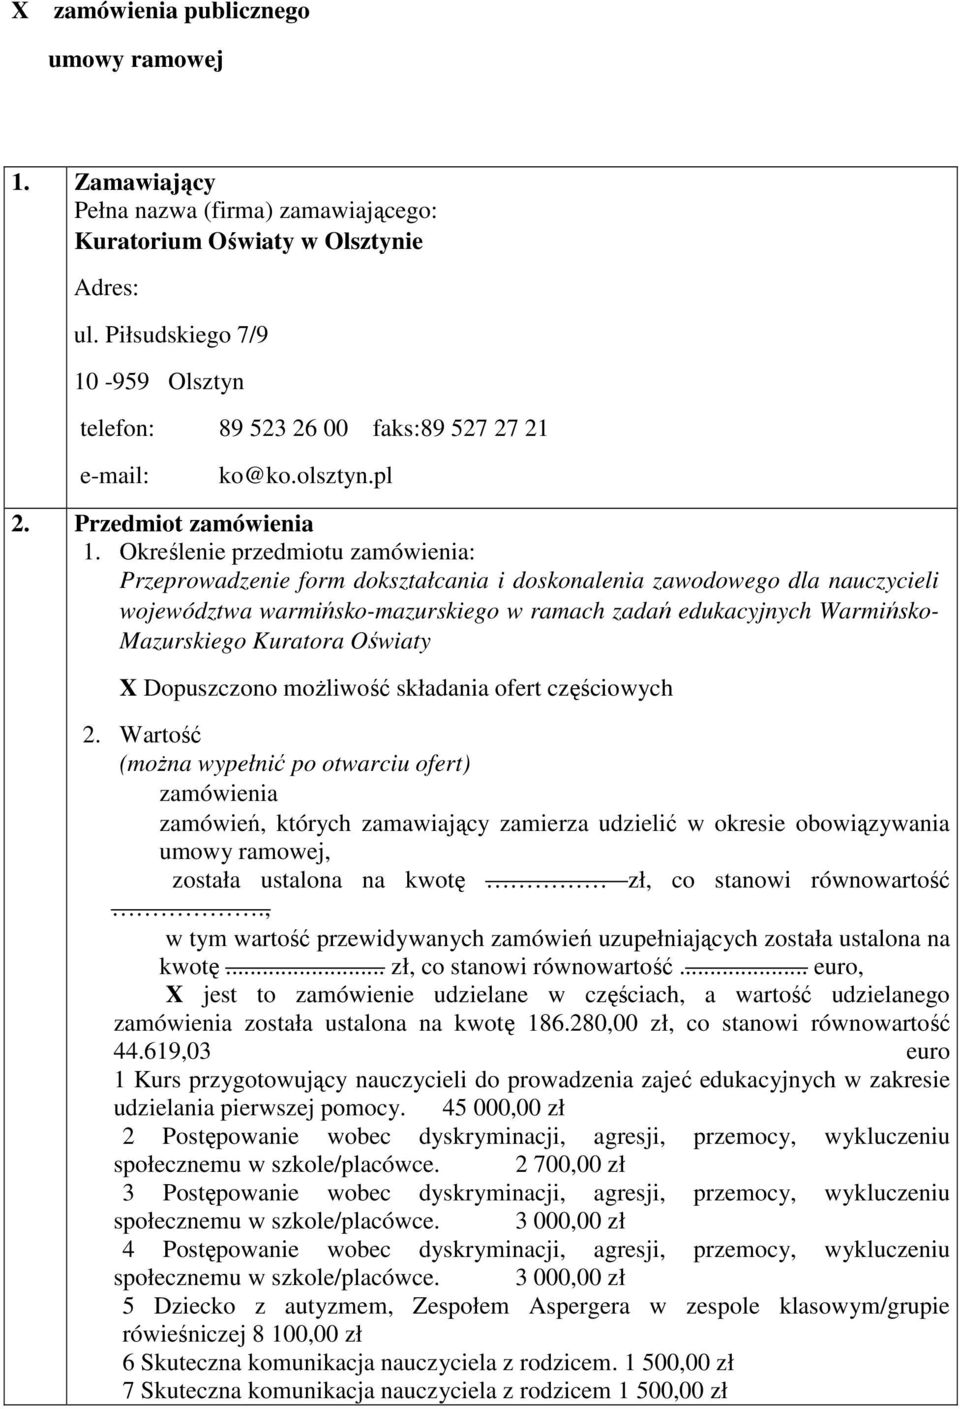 Określenie przedmiotu zamówienia: Przeprowadzenie form dokształcania i doskonalenia zawodowego dla nauczycieli województwa warmińsko-mazurskiego w ramach zadań edukacyjnych Warmińsko- Mazurskiego